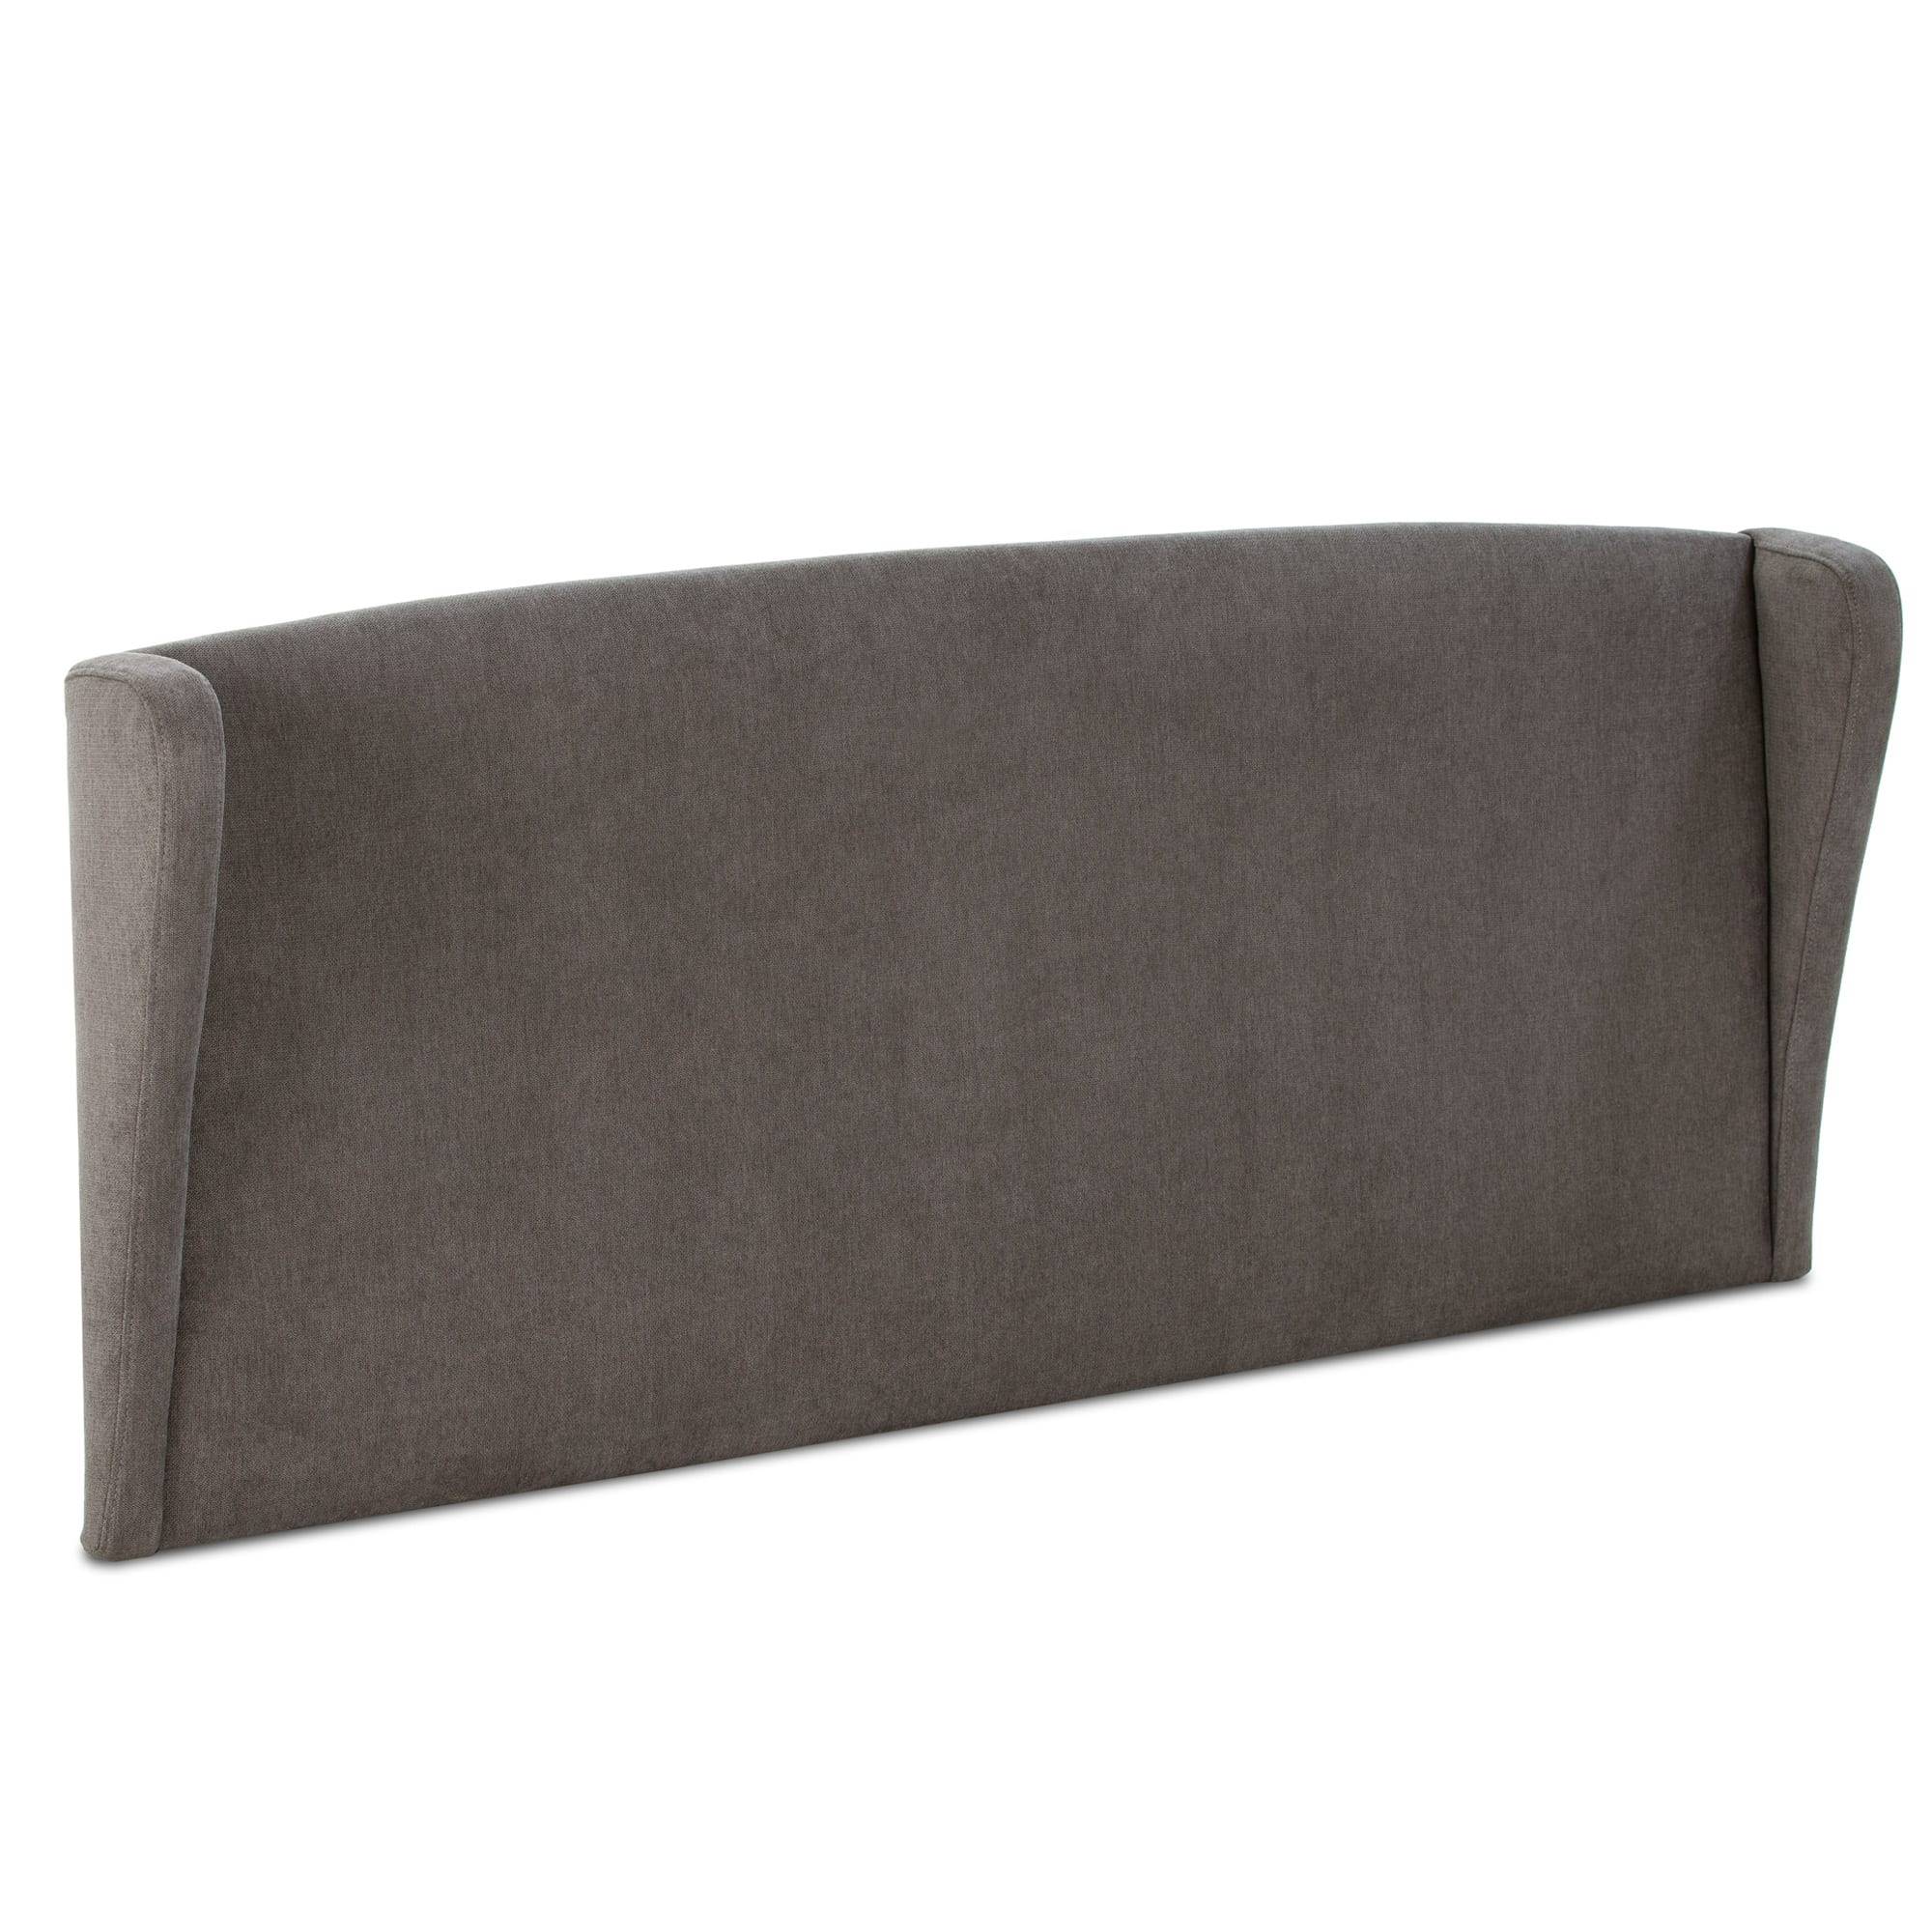 Cabecero-tapizado-orejero-140x60-cm-color-gris-oscuro-para-cama-de-135- Munich-de-Maisons-du-Monde